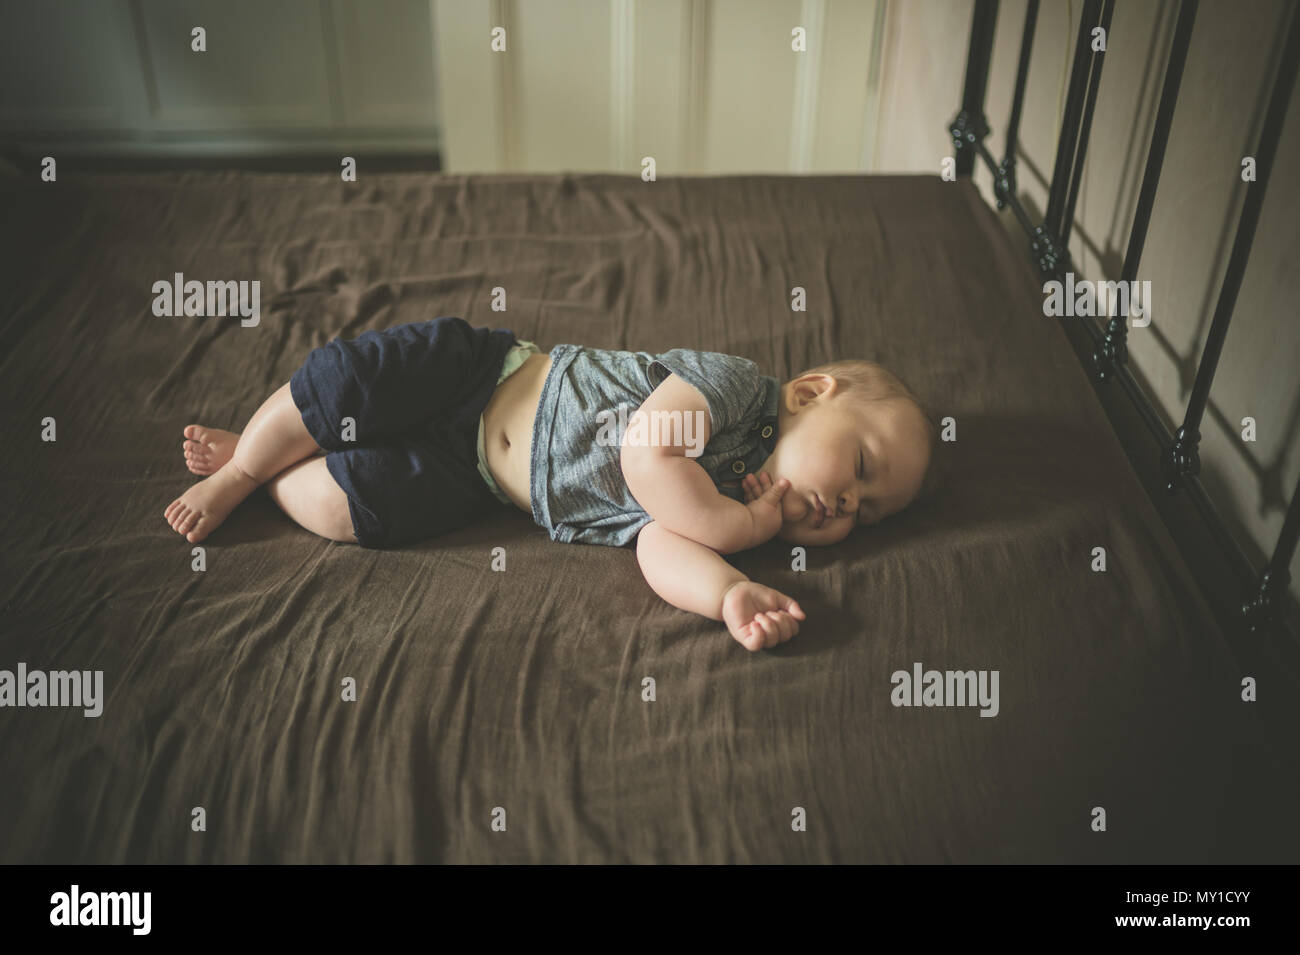 Un petit bébé est en train de dormir sur un lit Banque D'Images